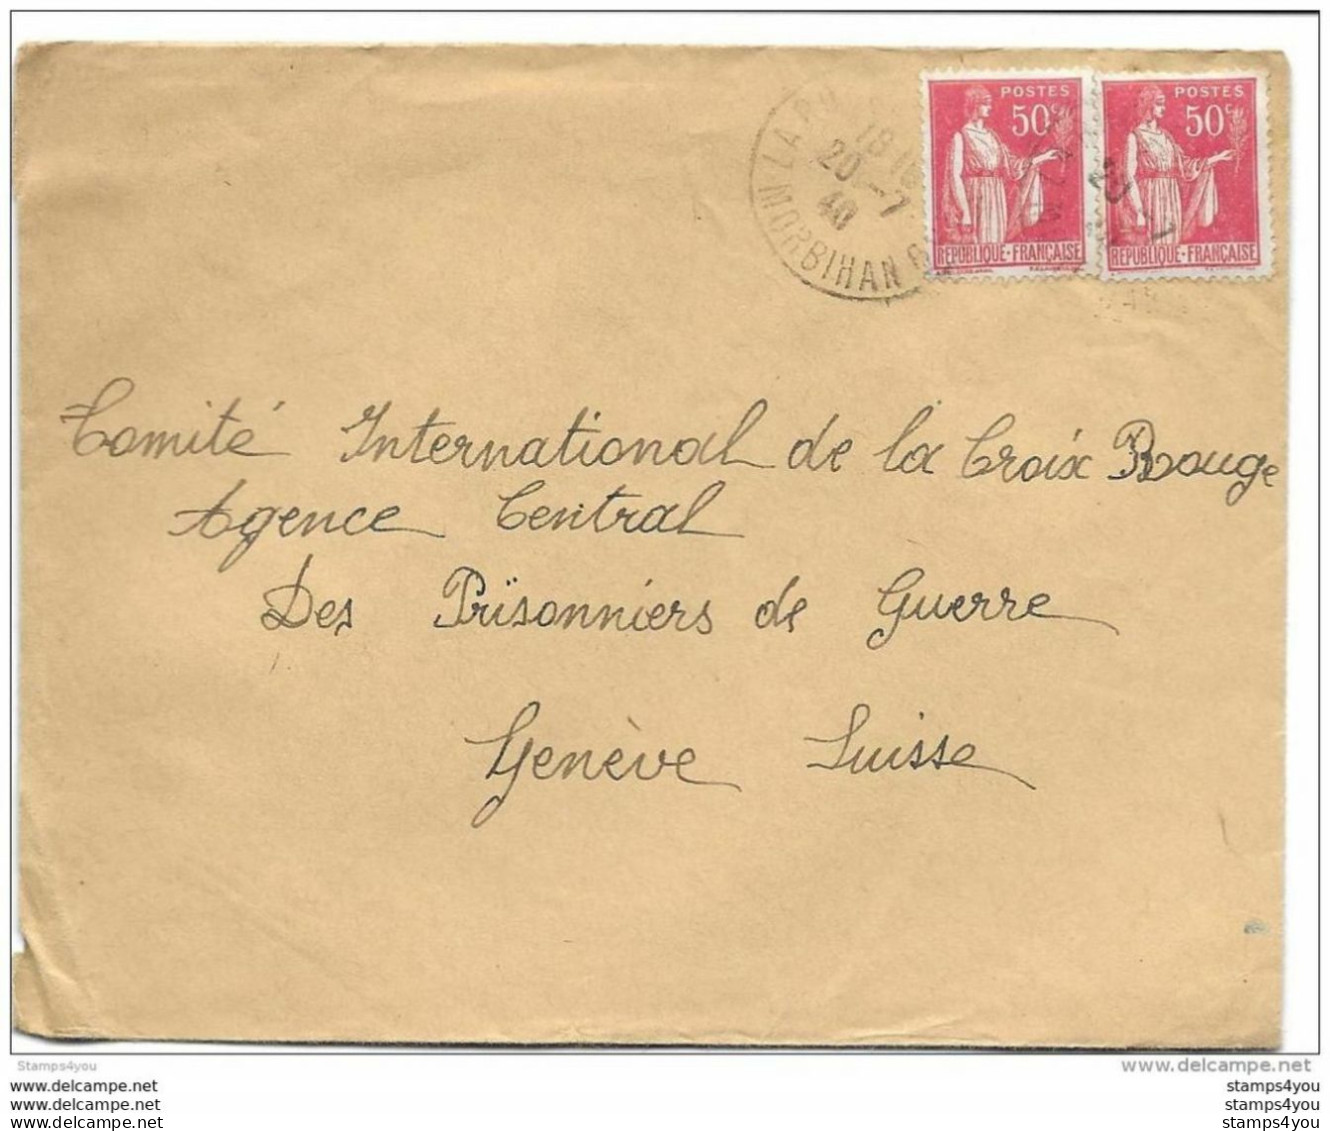 64 - 25 - Enveloppe Envoyée Du Morbihan  à L'agence Prisonniers De Guerre Croix-Rouge Genève 1940 - 2. Weltkrieg 1939-1945